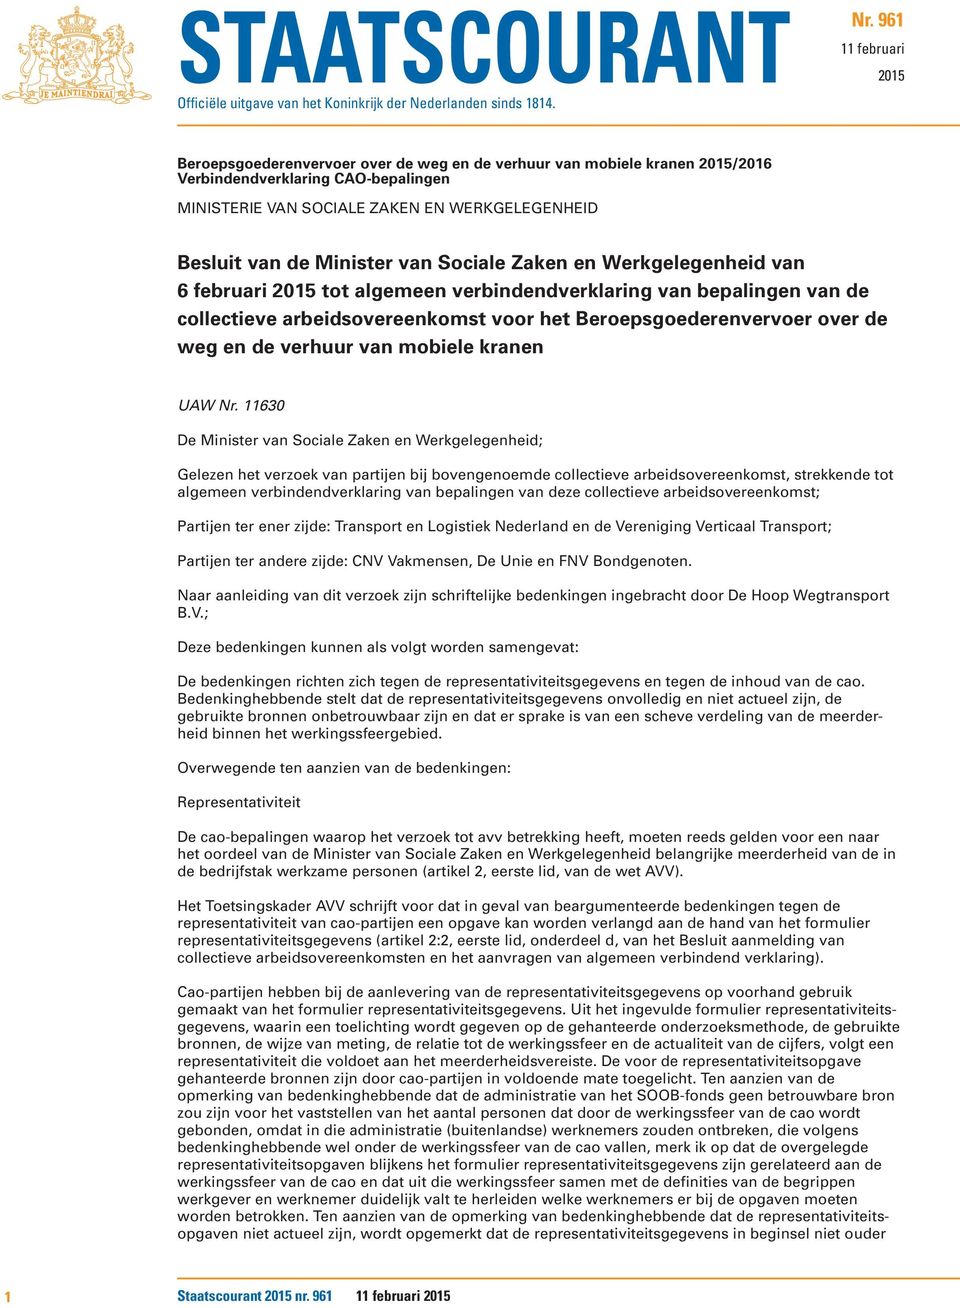 Minister van Sociale Zaken en Werkgelegenheid van 6 februari 2015 tot algemeen verbindendverklaring van bepalingen van de collectieve arbeidsovereenkomst voor het Beroepsgoederenvervoer over de weg